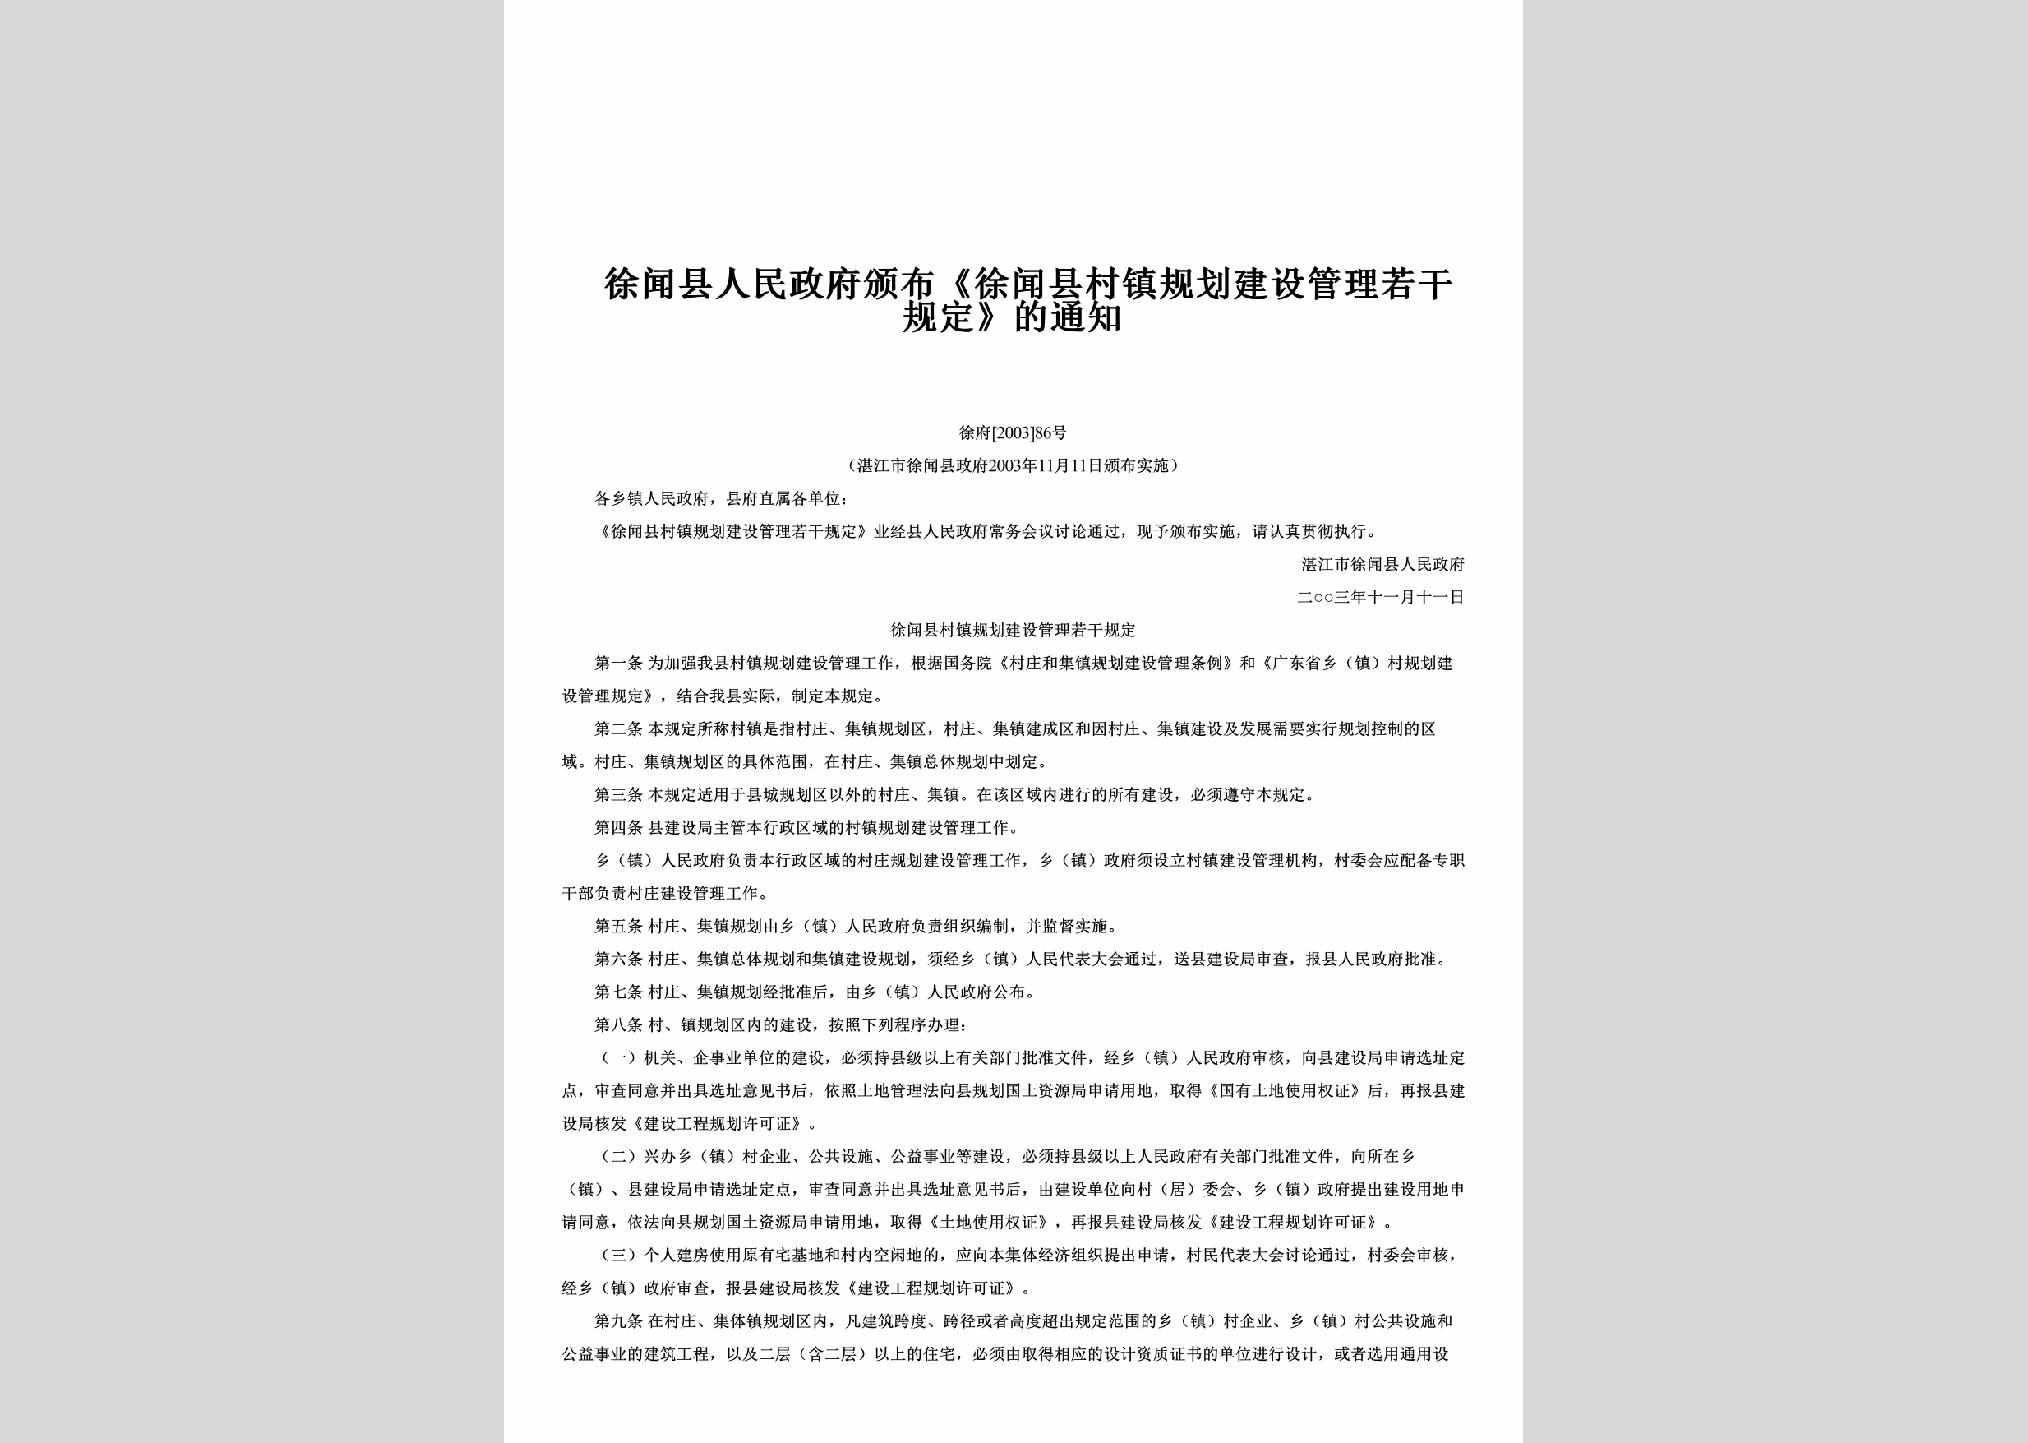 徐府[2003]86号：颁布《徐闻县村镇规划建设管理若干规定》的通知